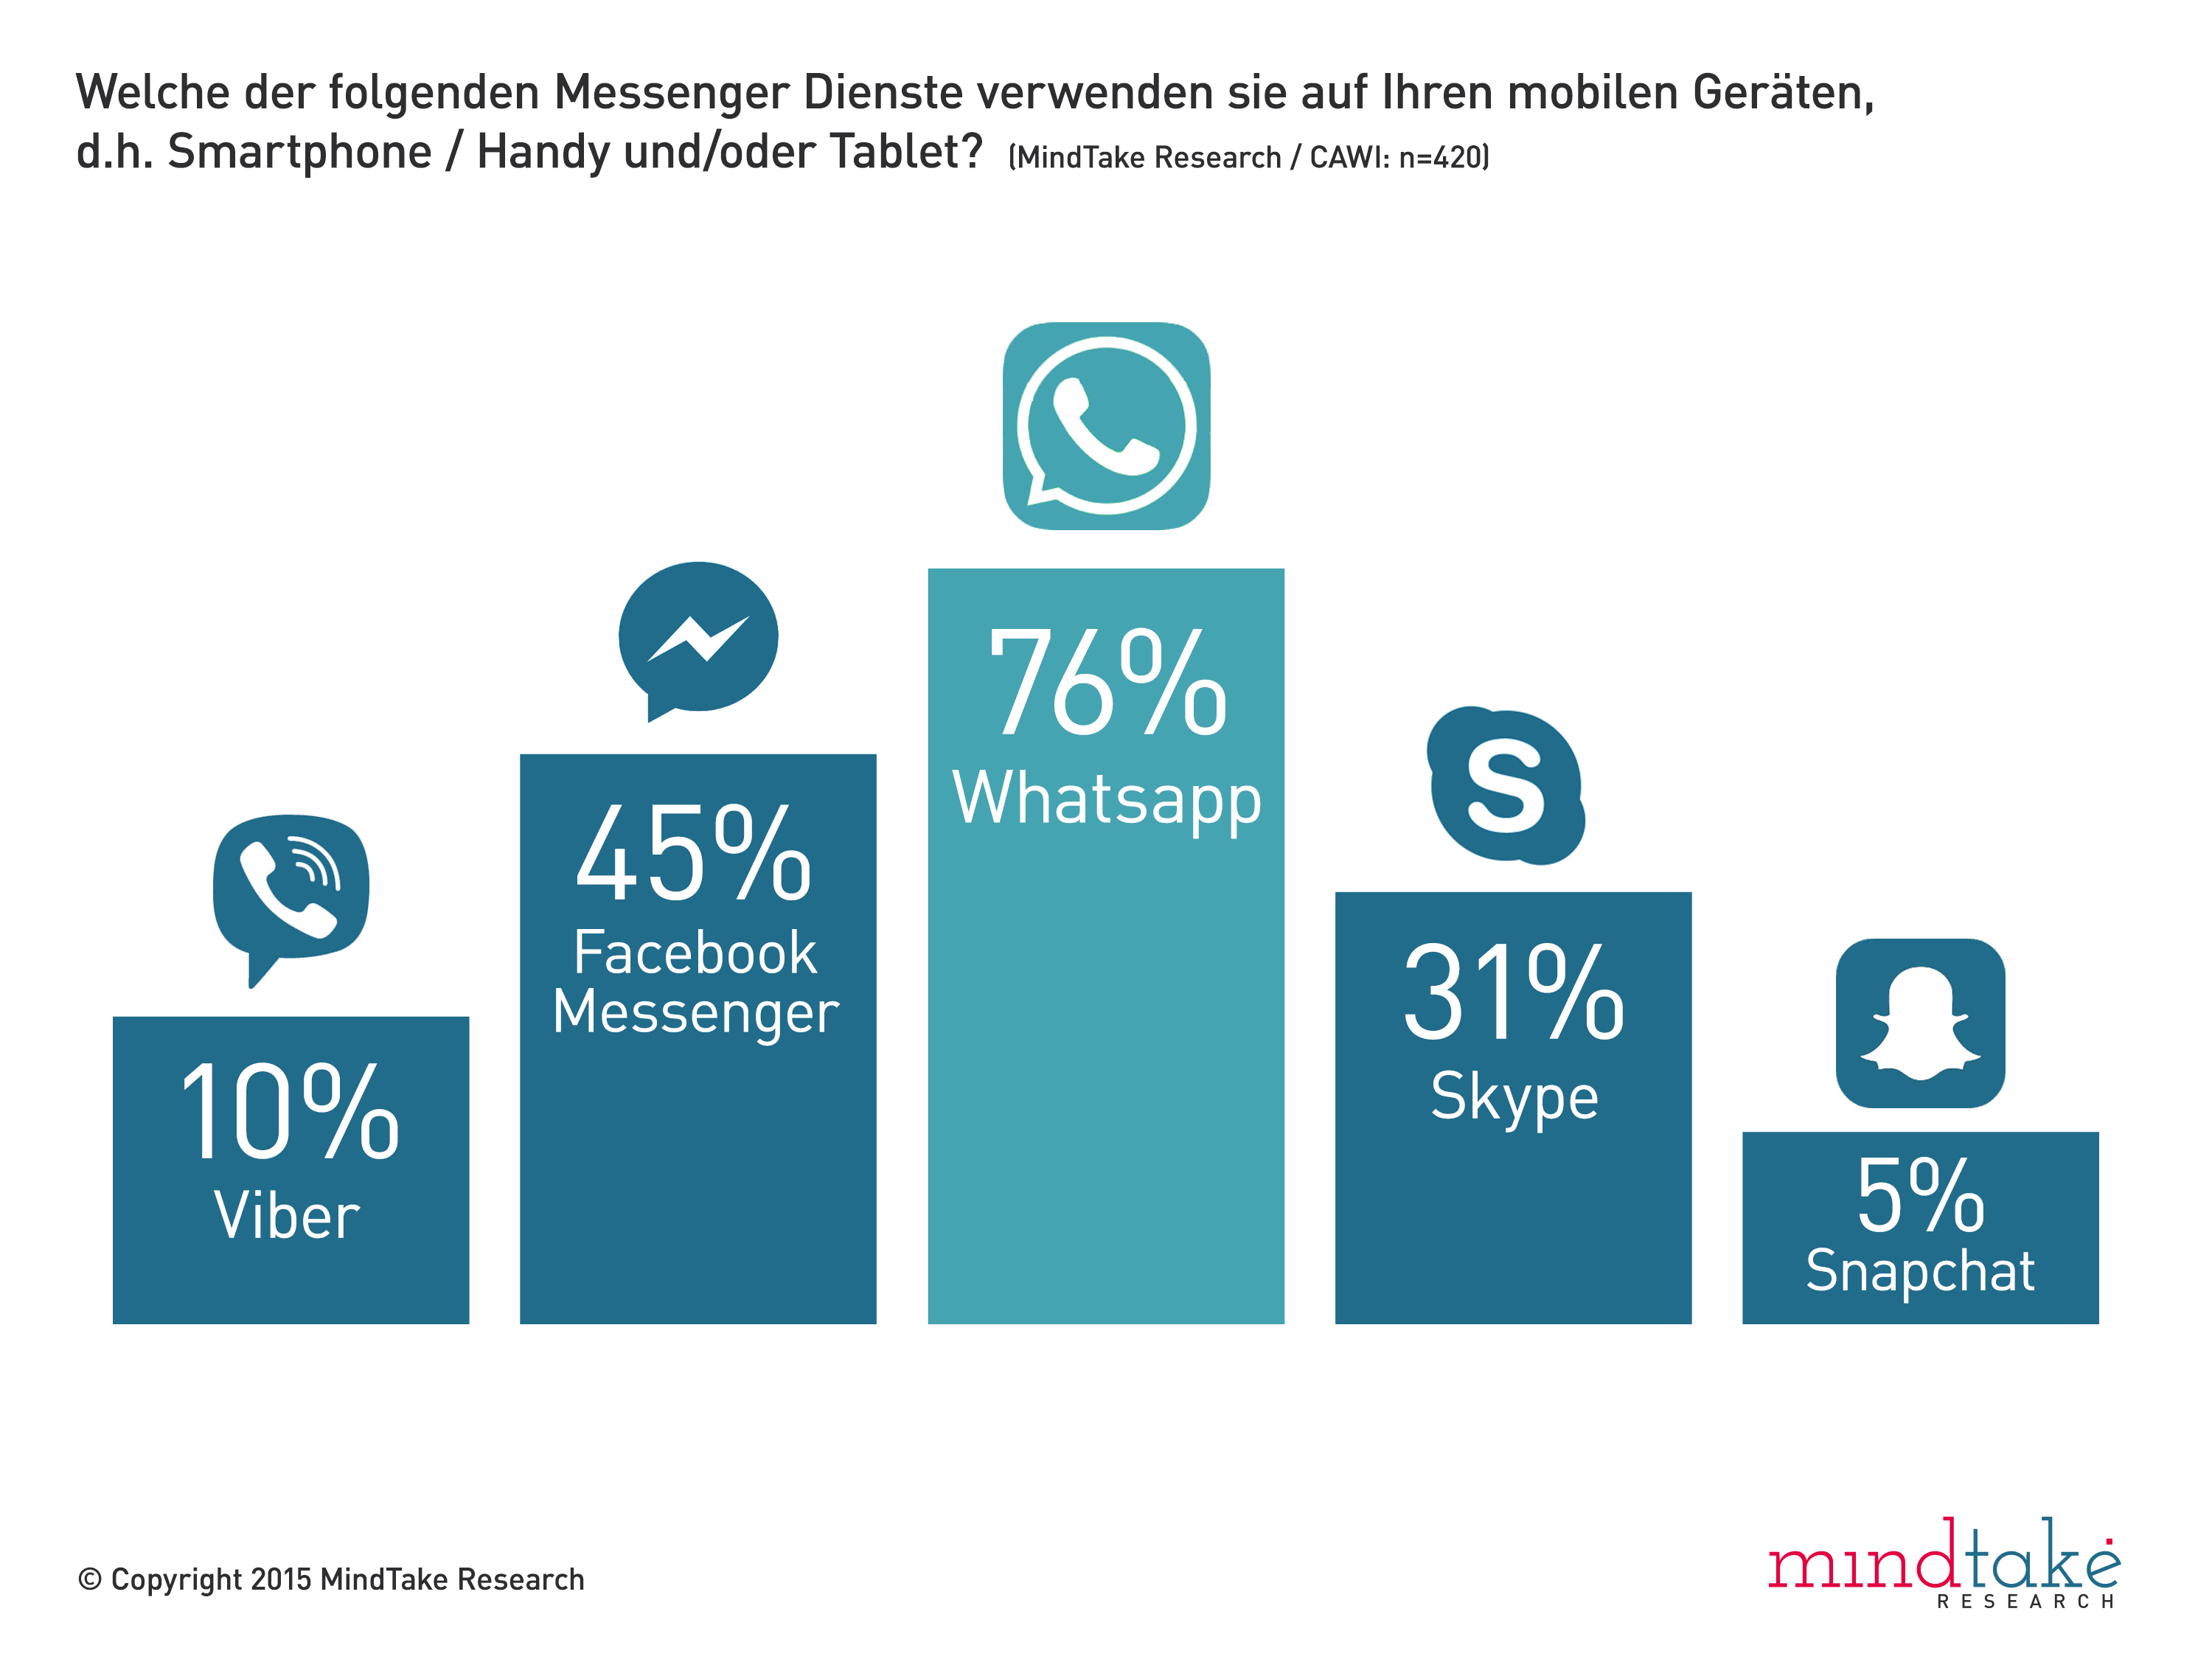 WhatsApp (76 Prozent), Facebook Messenger (45 Prozent) und Skype (31 Prozent) sind laut einer aktuellen Studie von MindTake Research die beliebtesten Messenger Dienste in Österreich. Knapp 89 Prozent der mobilen Internet-Nutzer verwenden solche Services bereits auf ihrem Smartphone oder Tablet.